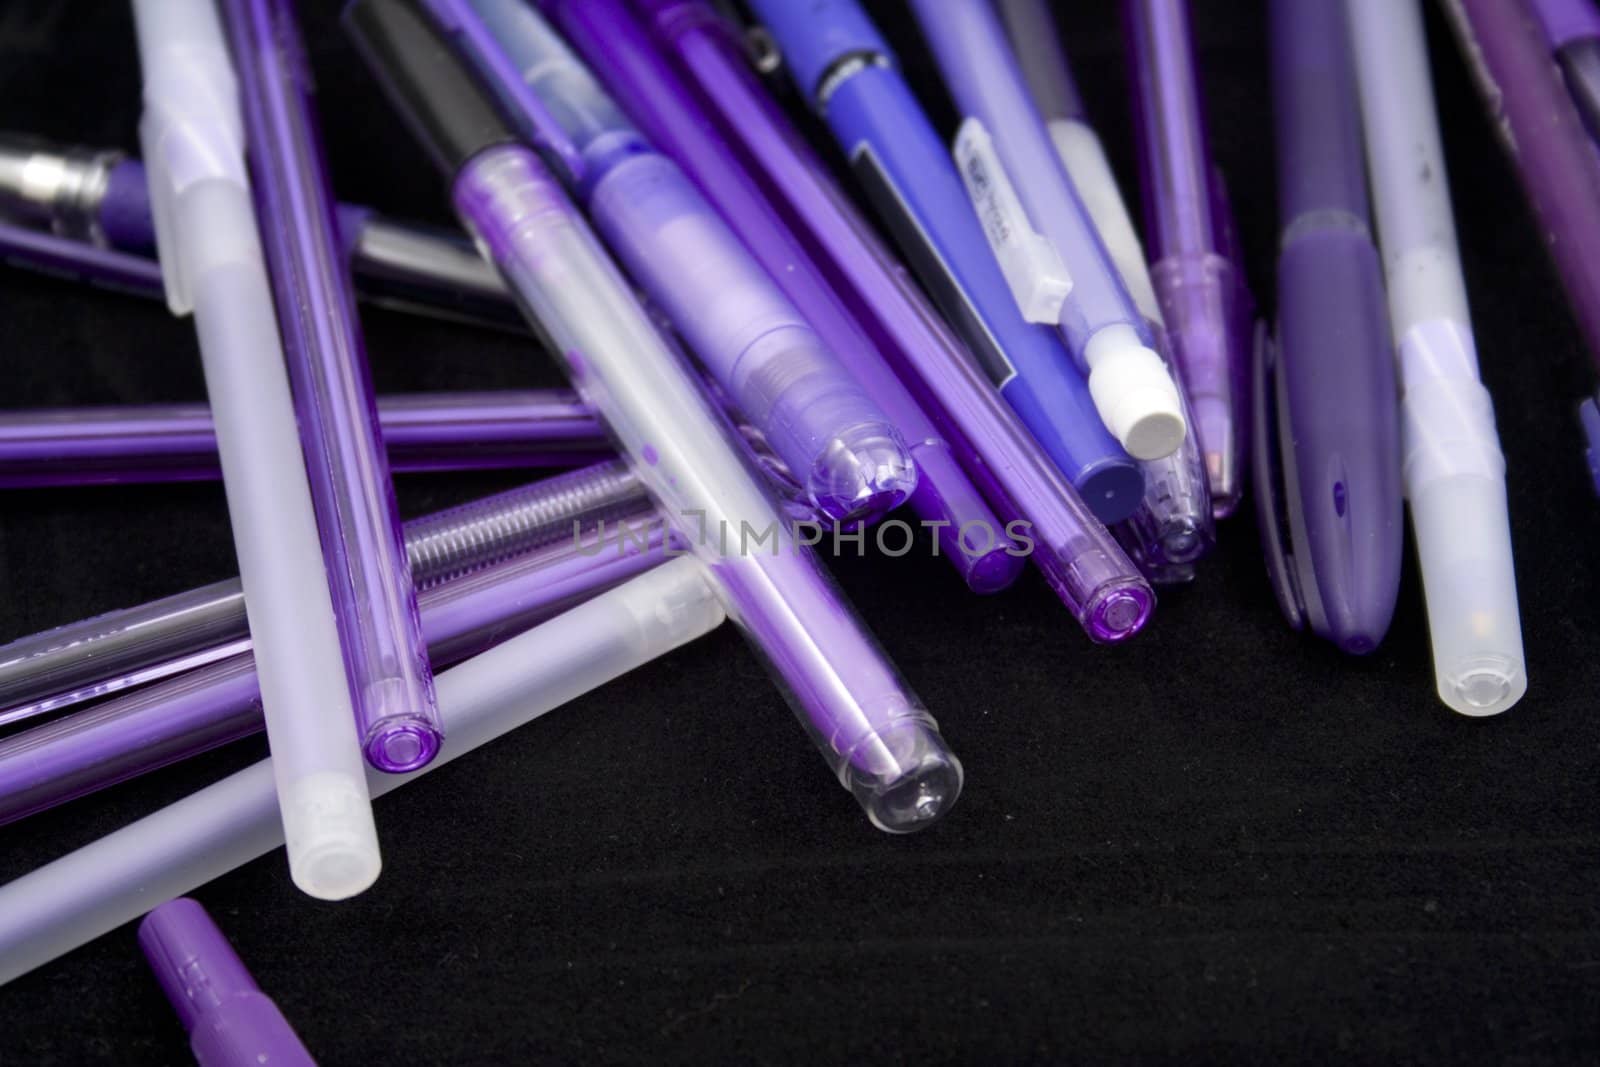 purple pens by snokid